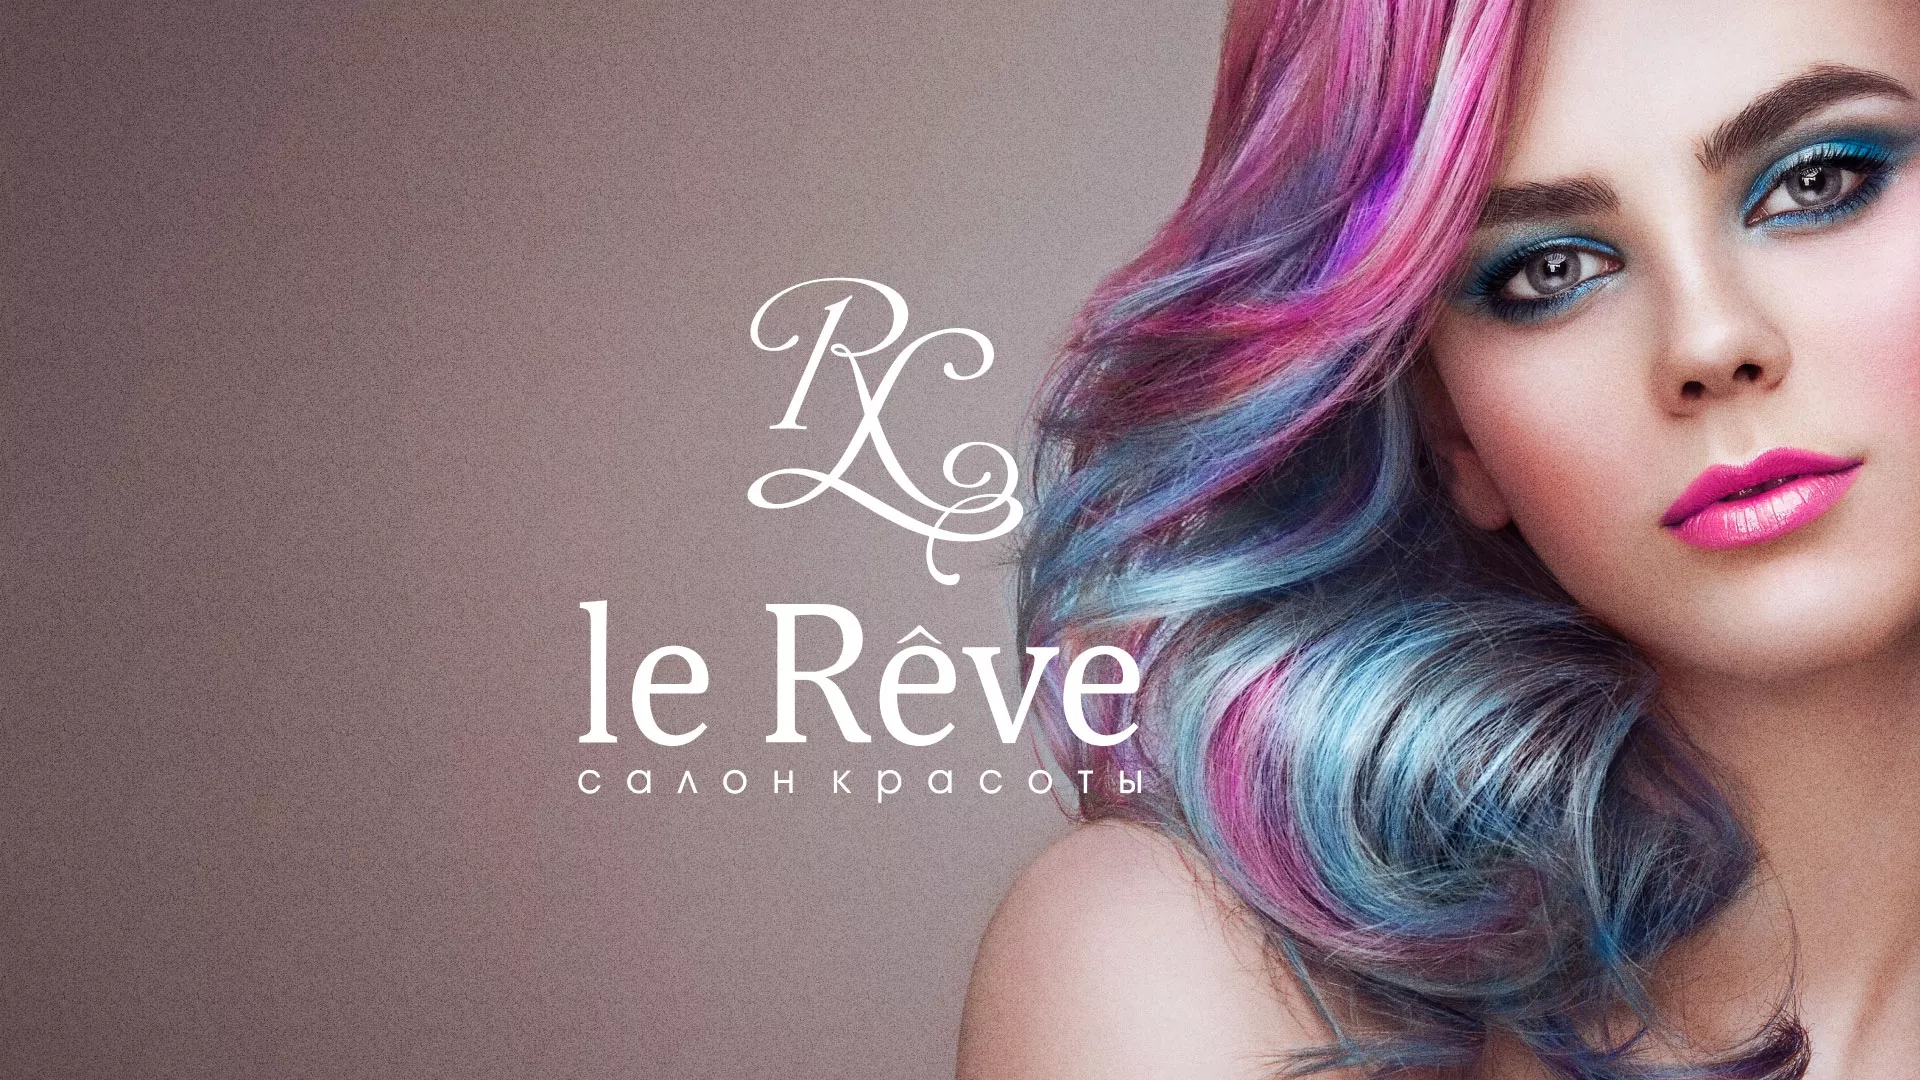 Создание сайта для салона красоты «Le Reve» в Новокузнецке